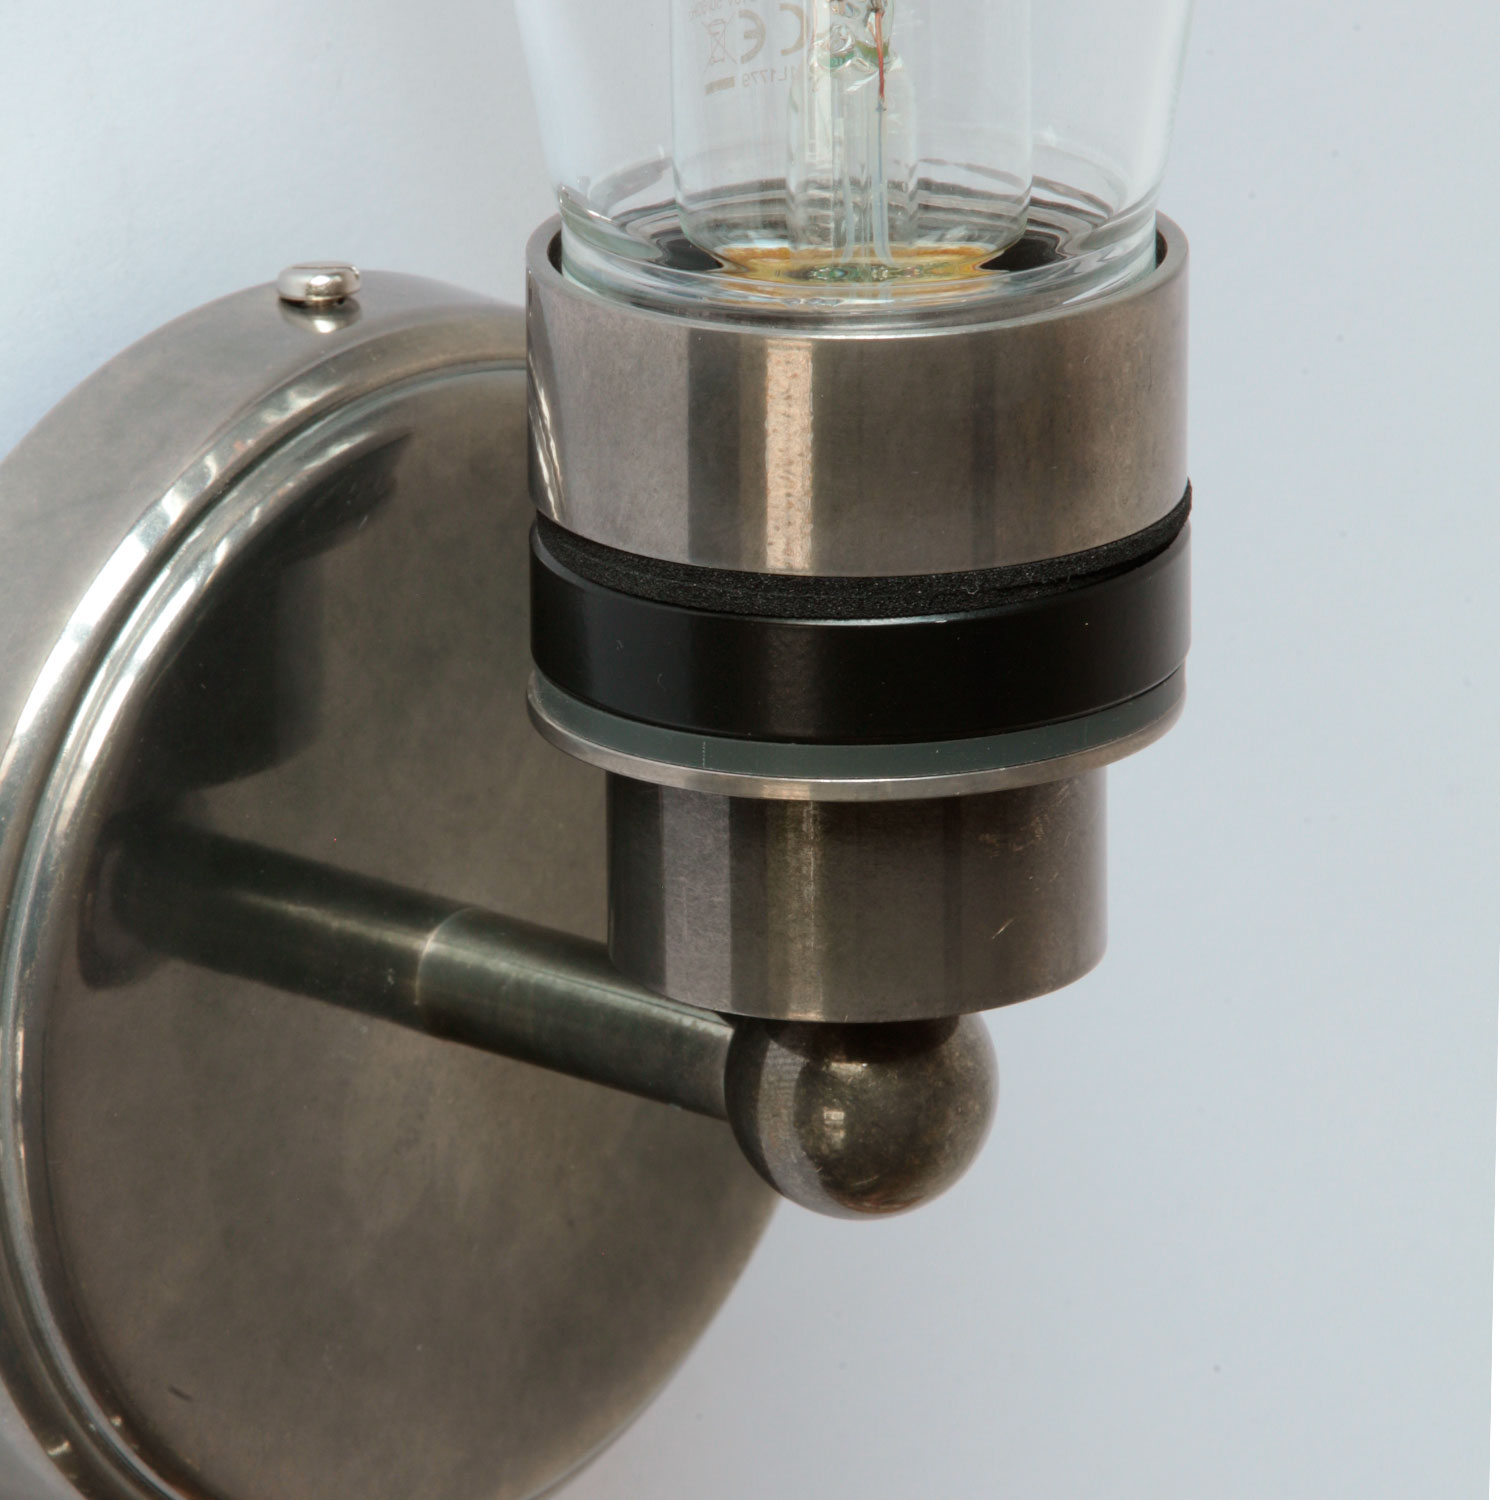 Schlichte Badezimmer-Wandlampe mit Glaskolben, IP65: Messing alt-silbern patiniert